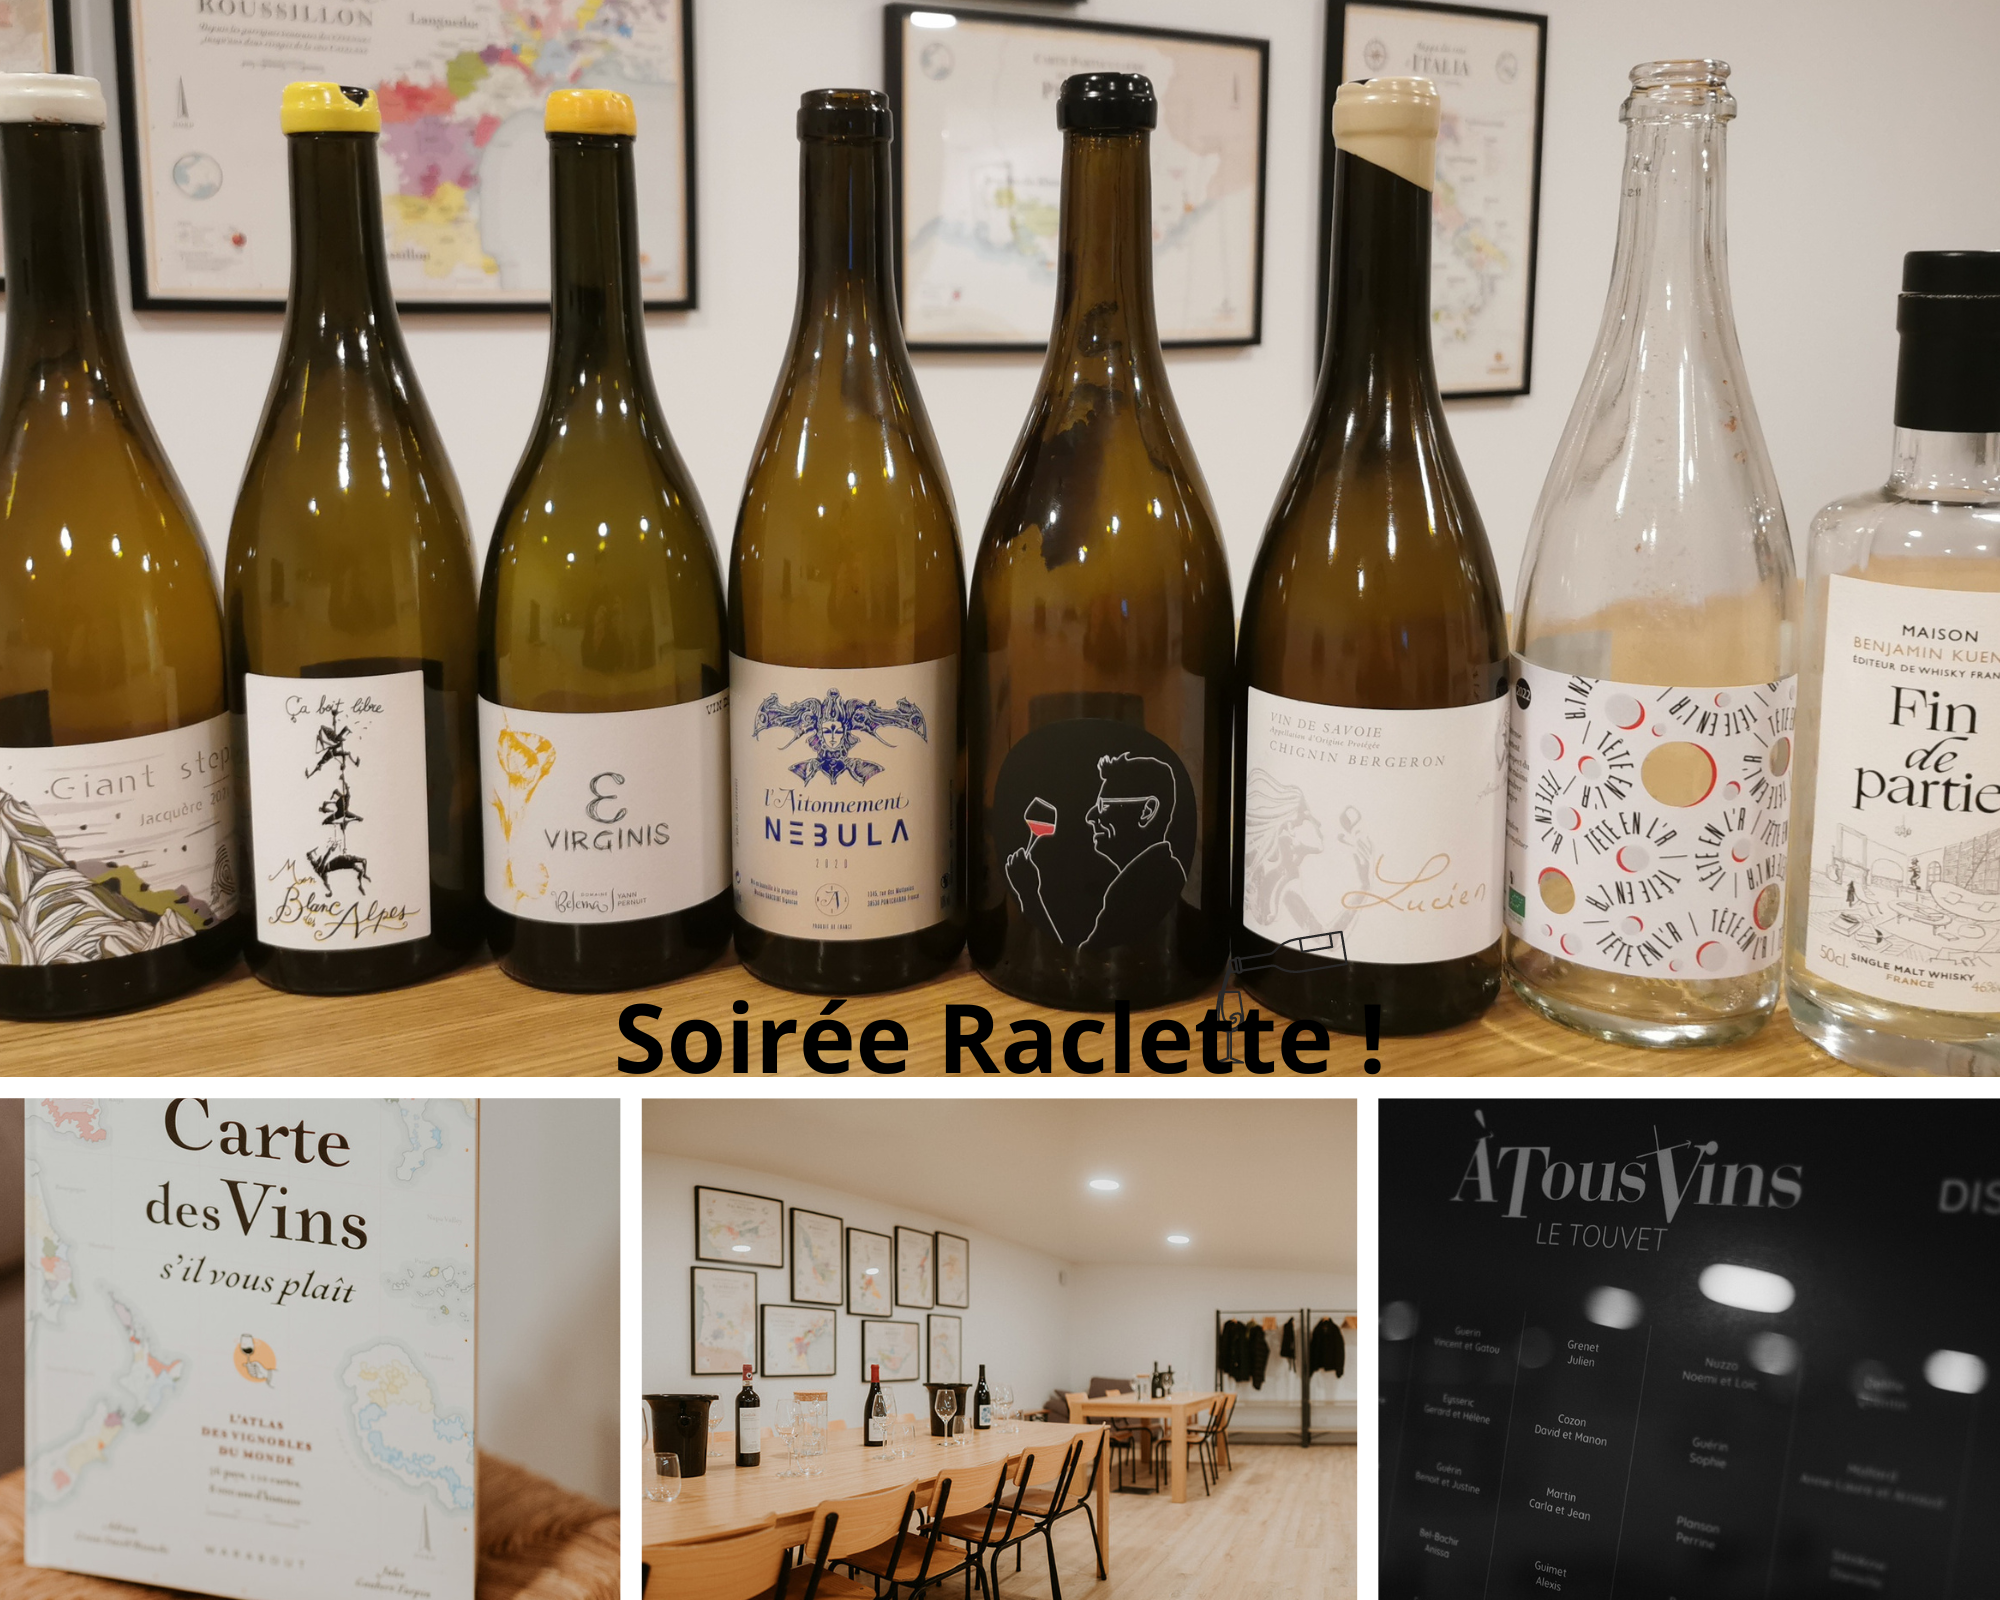 Soirée raclette et vins de Savoie À Tous Vins